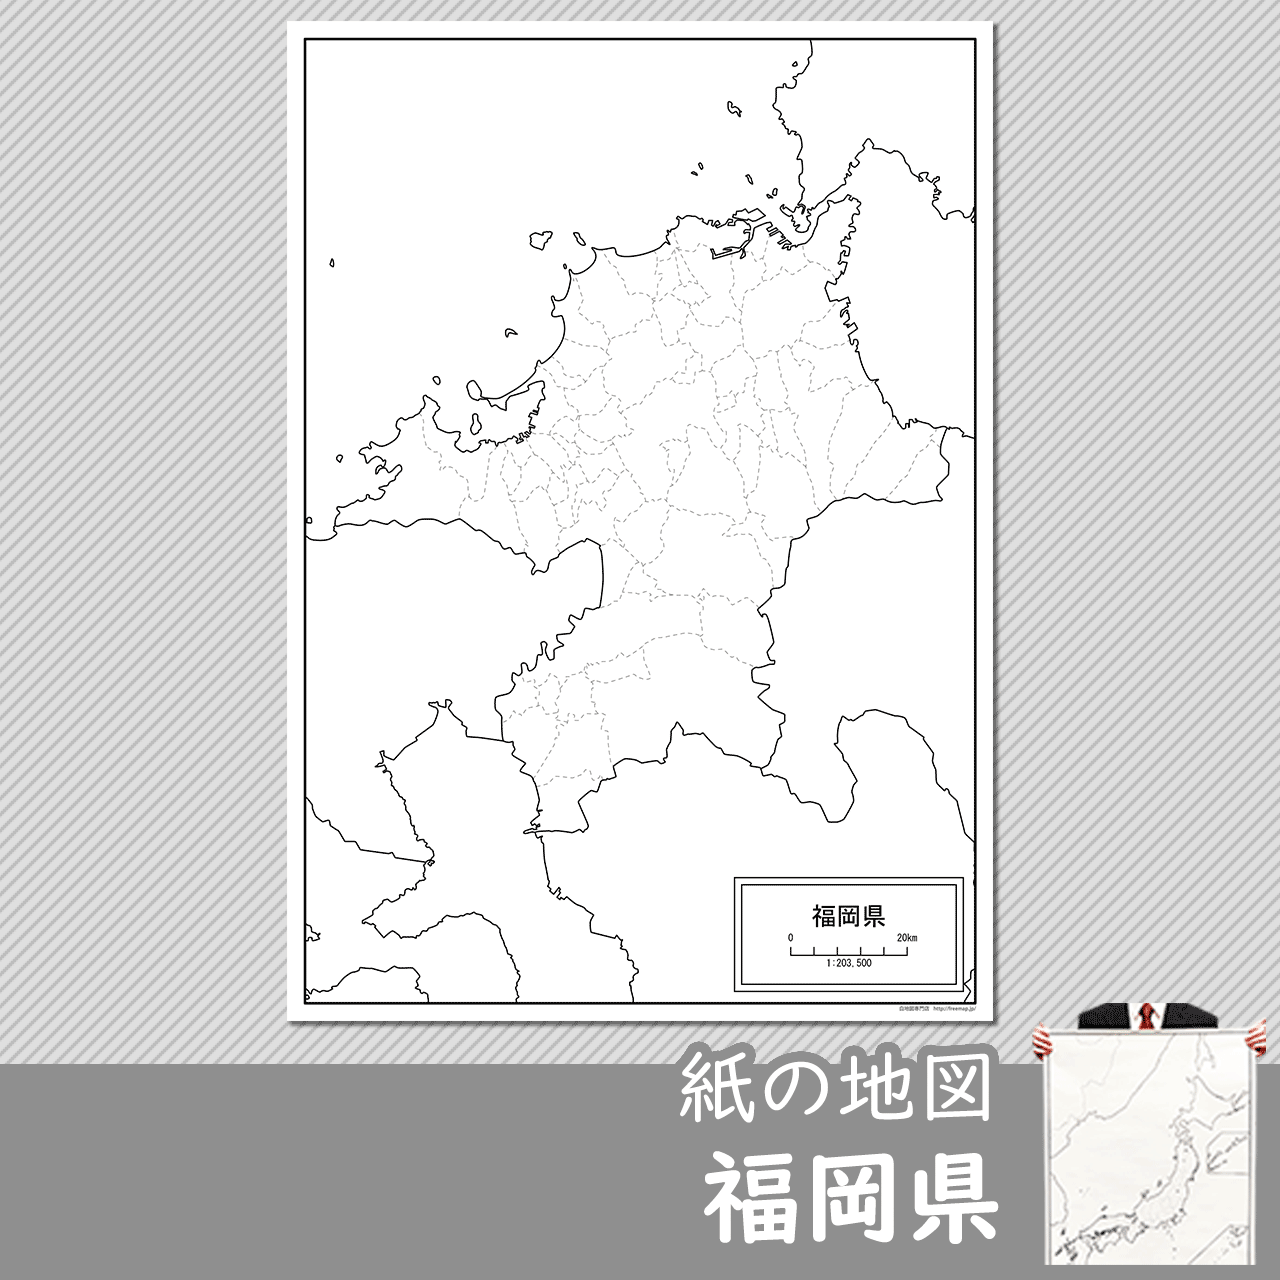 福岡県の紙の白地図のサムネイル